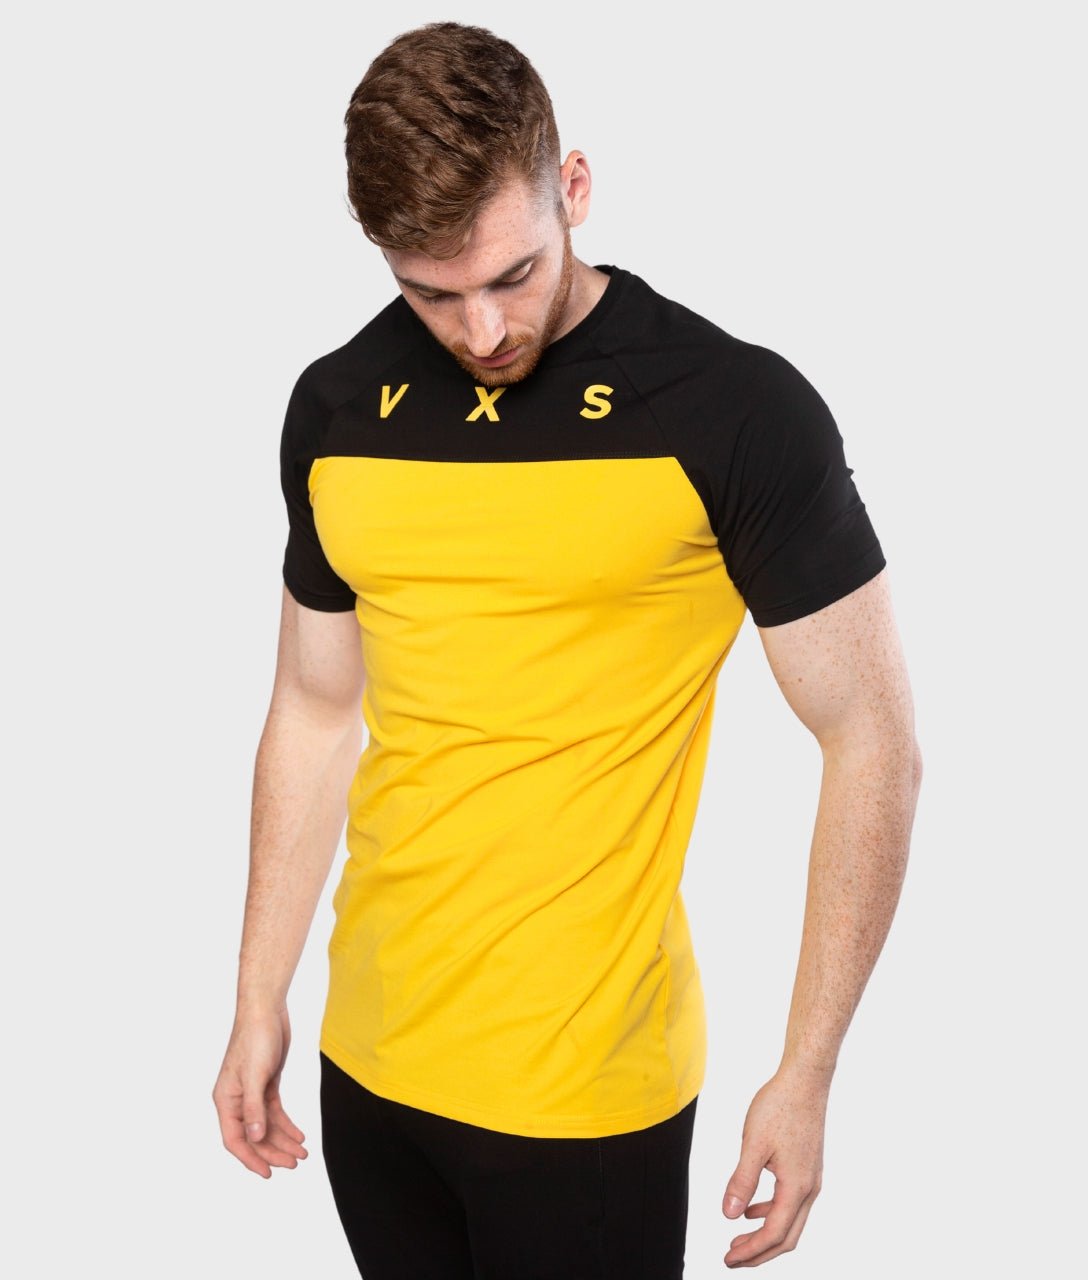 Aces T-Shirt [Black/Yellow] - VXS GYM WEAR